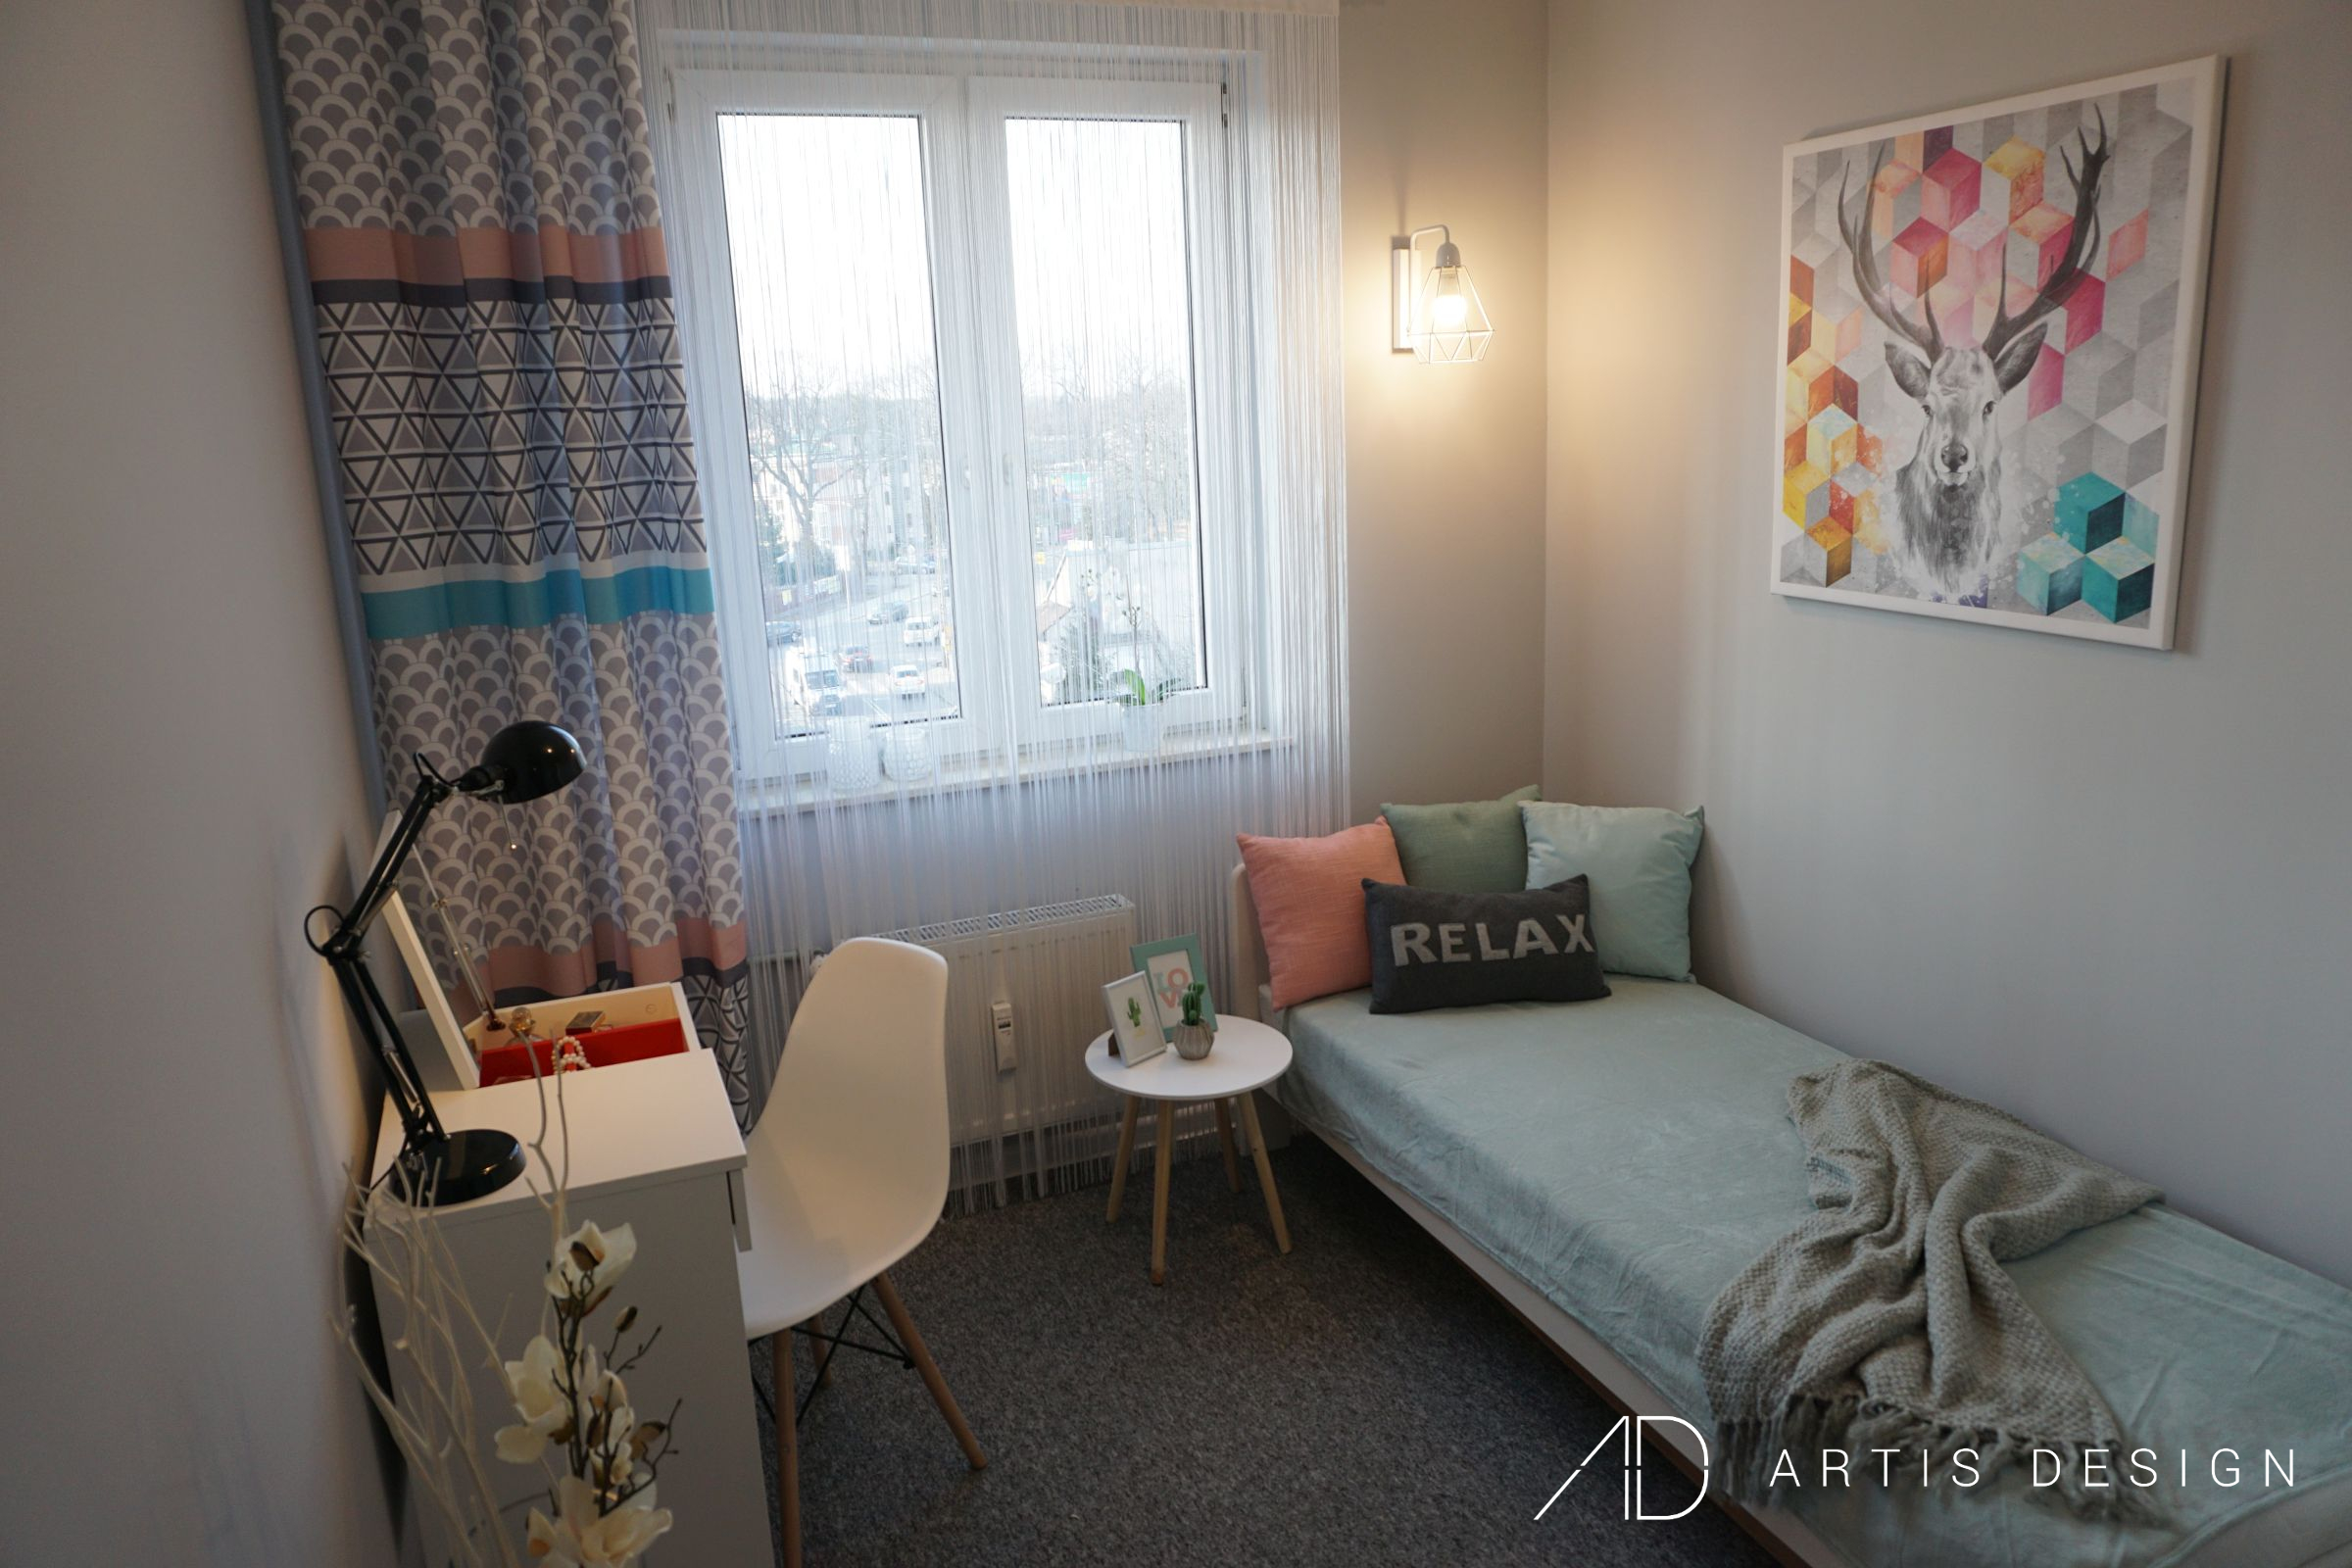 Projekt: Mieszkanie do wynajęcia w stylu skandynawskim | Artis Design: Studio projektowe